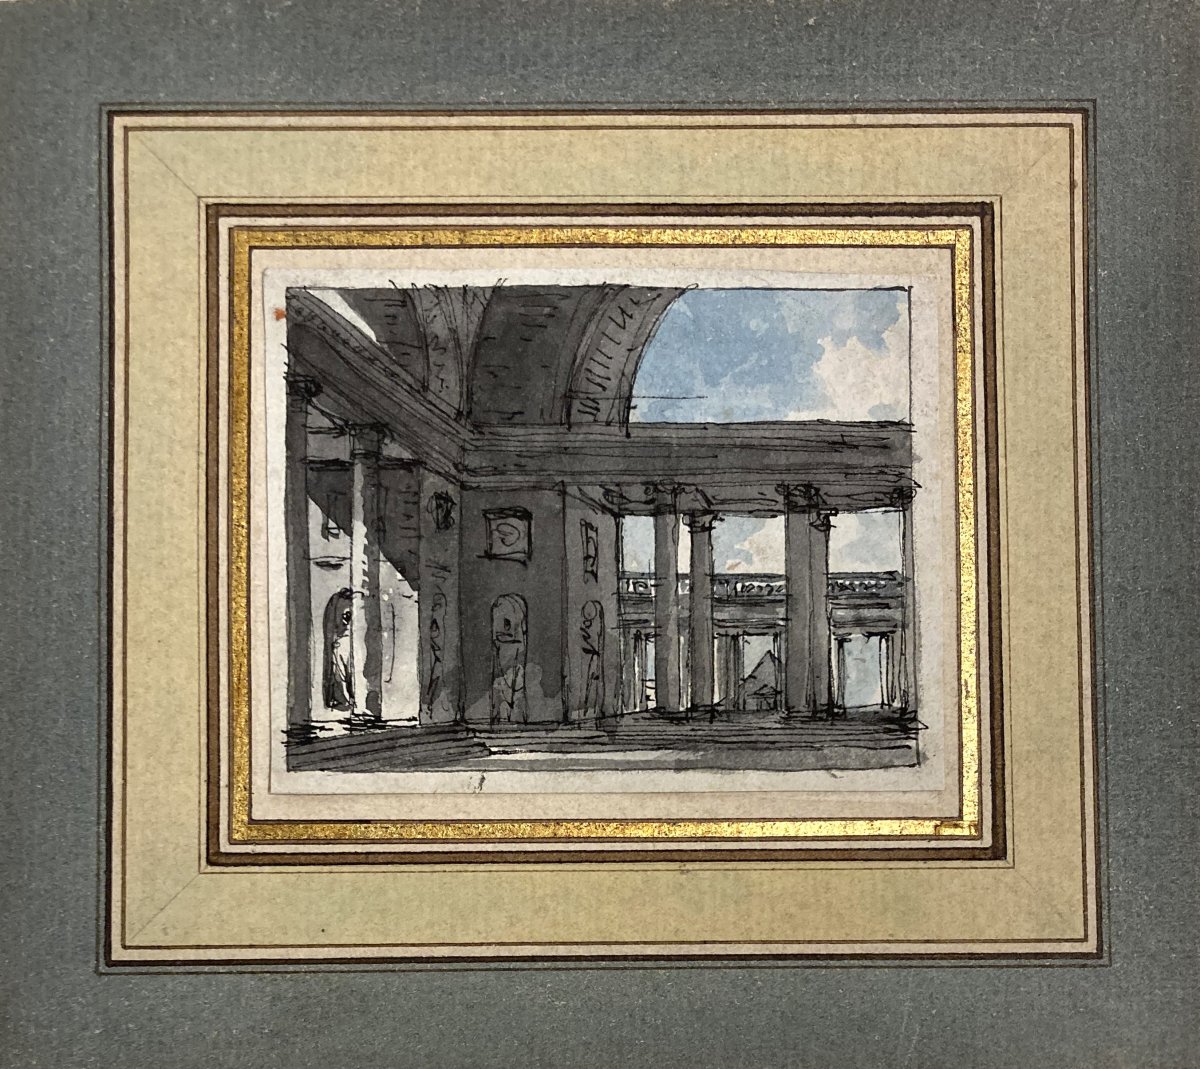 NICOLLE Victor-Jean (1754-1826) "Interieur d'un palais" Dessin/Plume et aquarelle